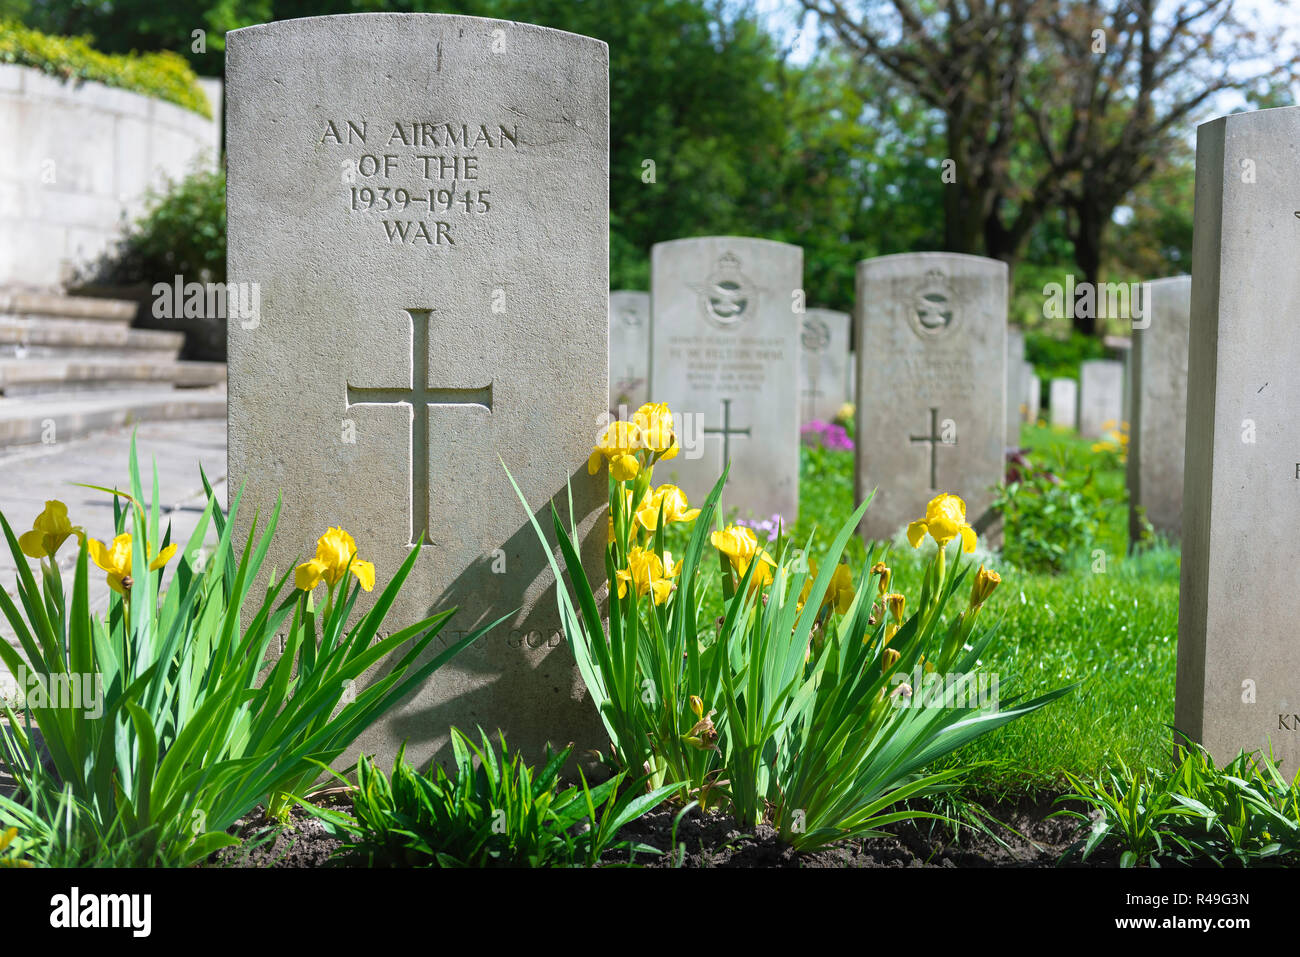 Britische Grab, die Aussicht auf einen gut gepflegten Grabstein eines unbekannten Alliierte Flieger, die in der WK 2, Poznan (Posen) Garnisonsfriedhof, Polen enthalten. Stockfoto